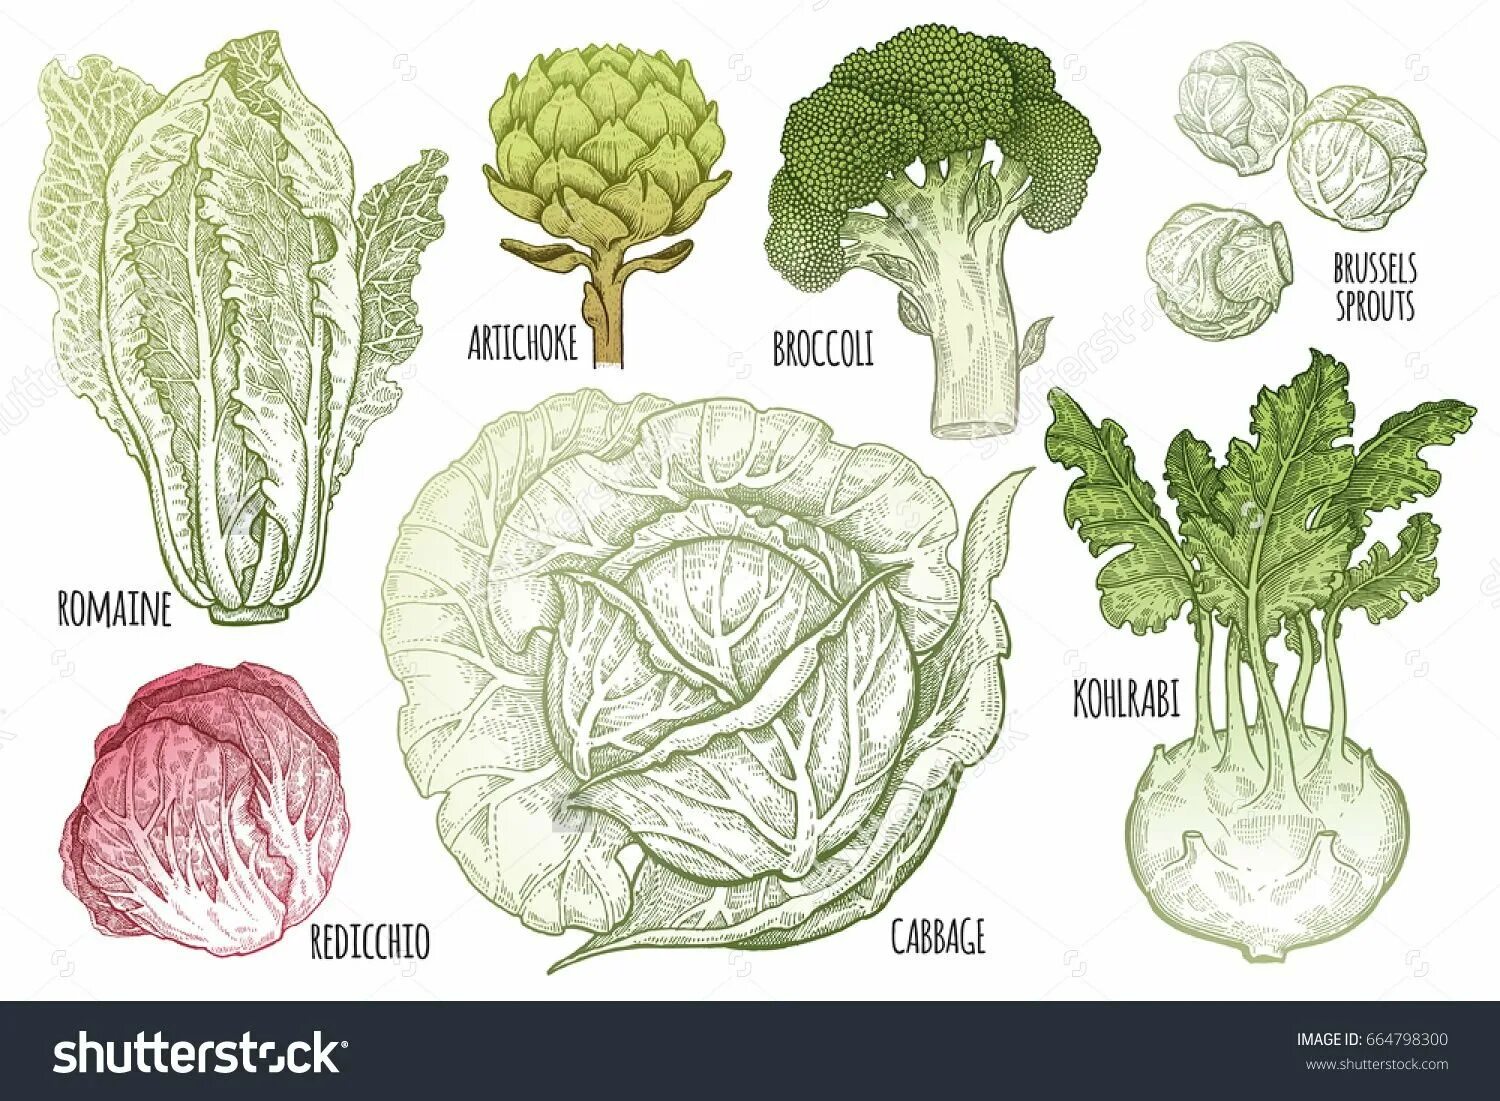 Капуста травянистое растение. Овощ типа капусты. Разновидности капусты в картинках. Разновидность капусты огородной. Капуста Наименование.